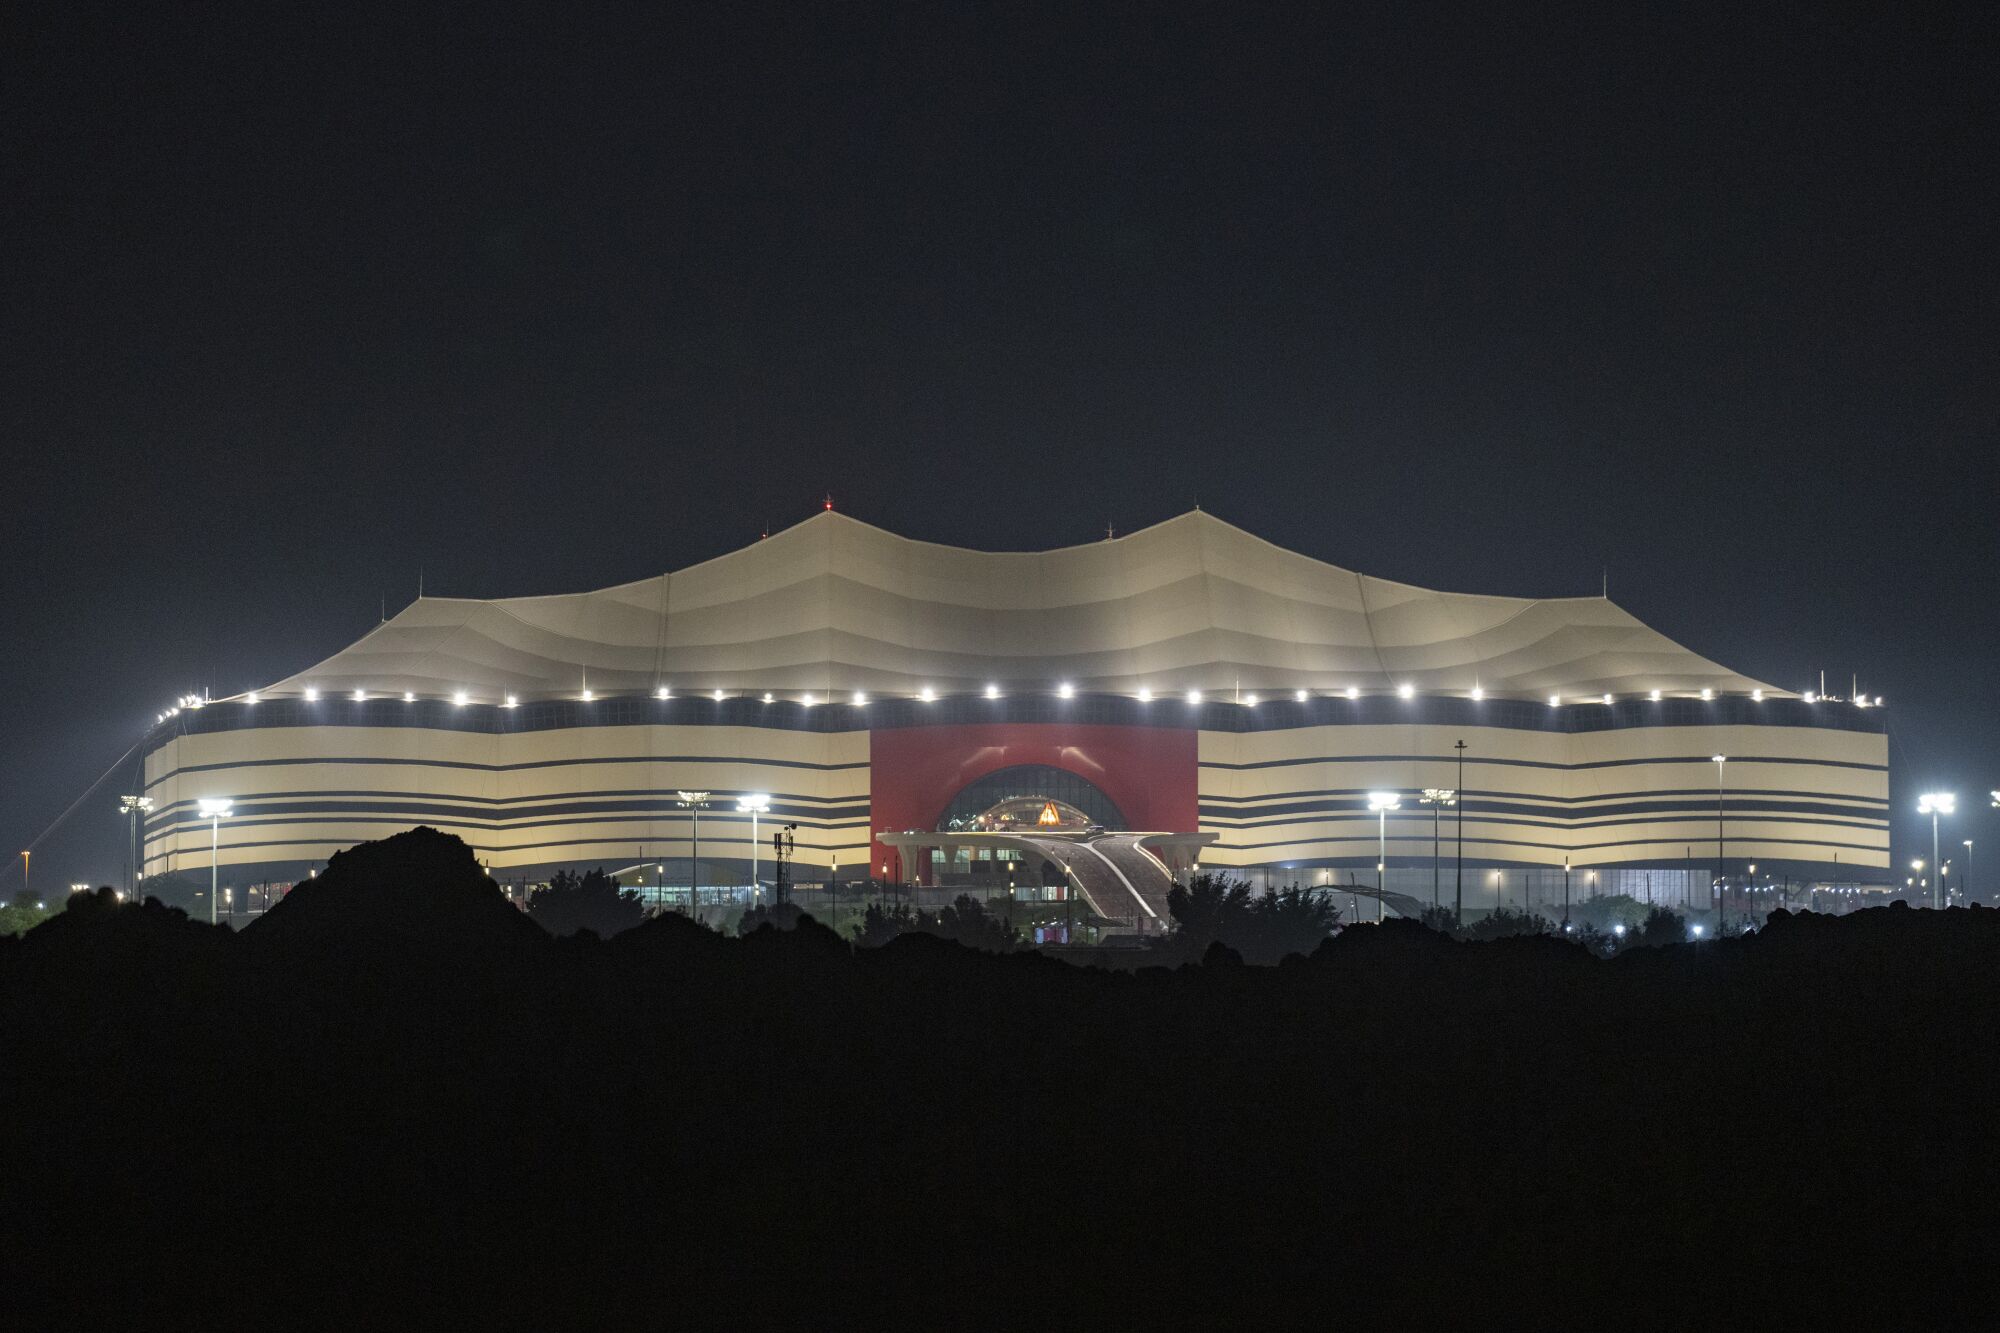 A view of the Al Bayt Stadium in Al Khor, Qatar.